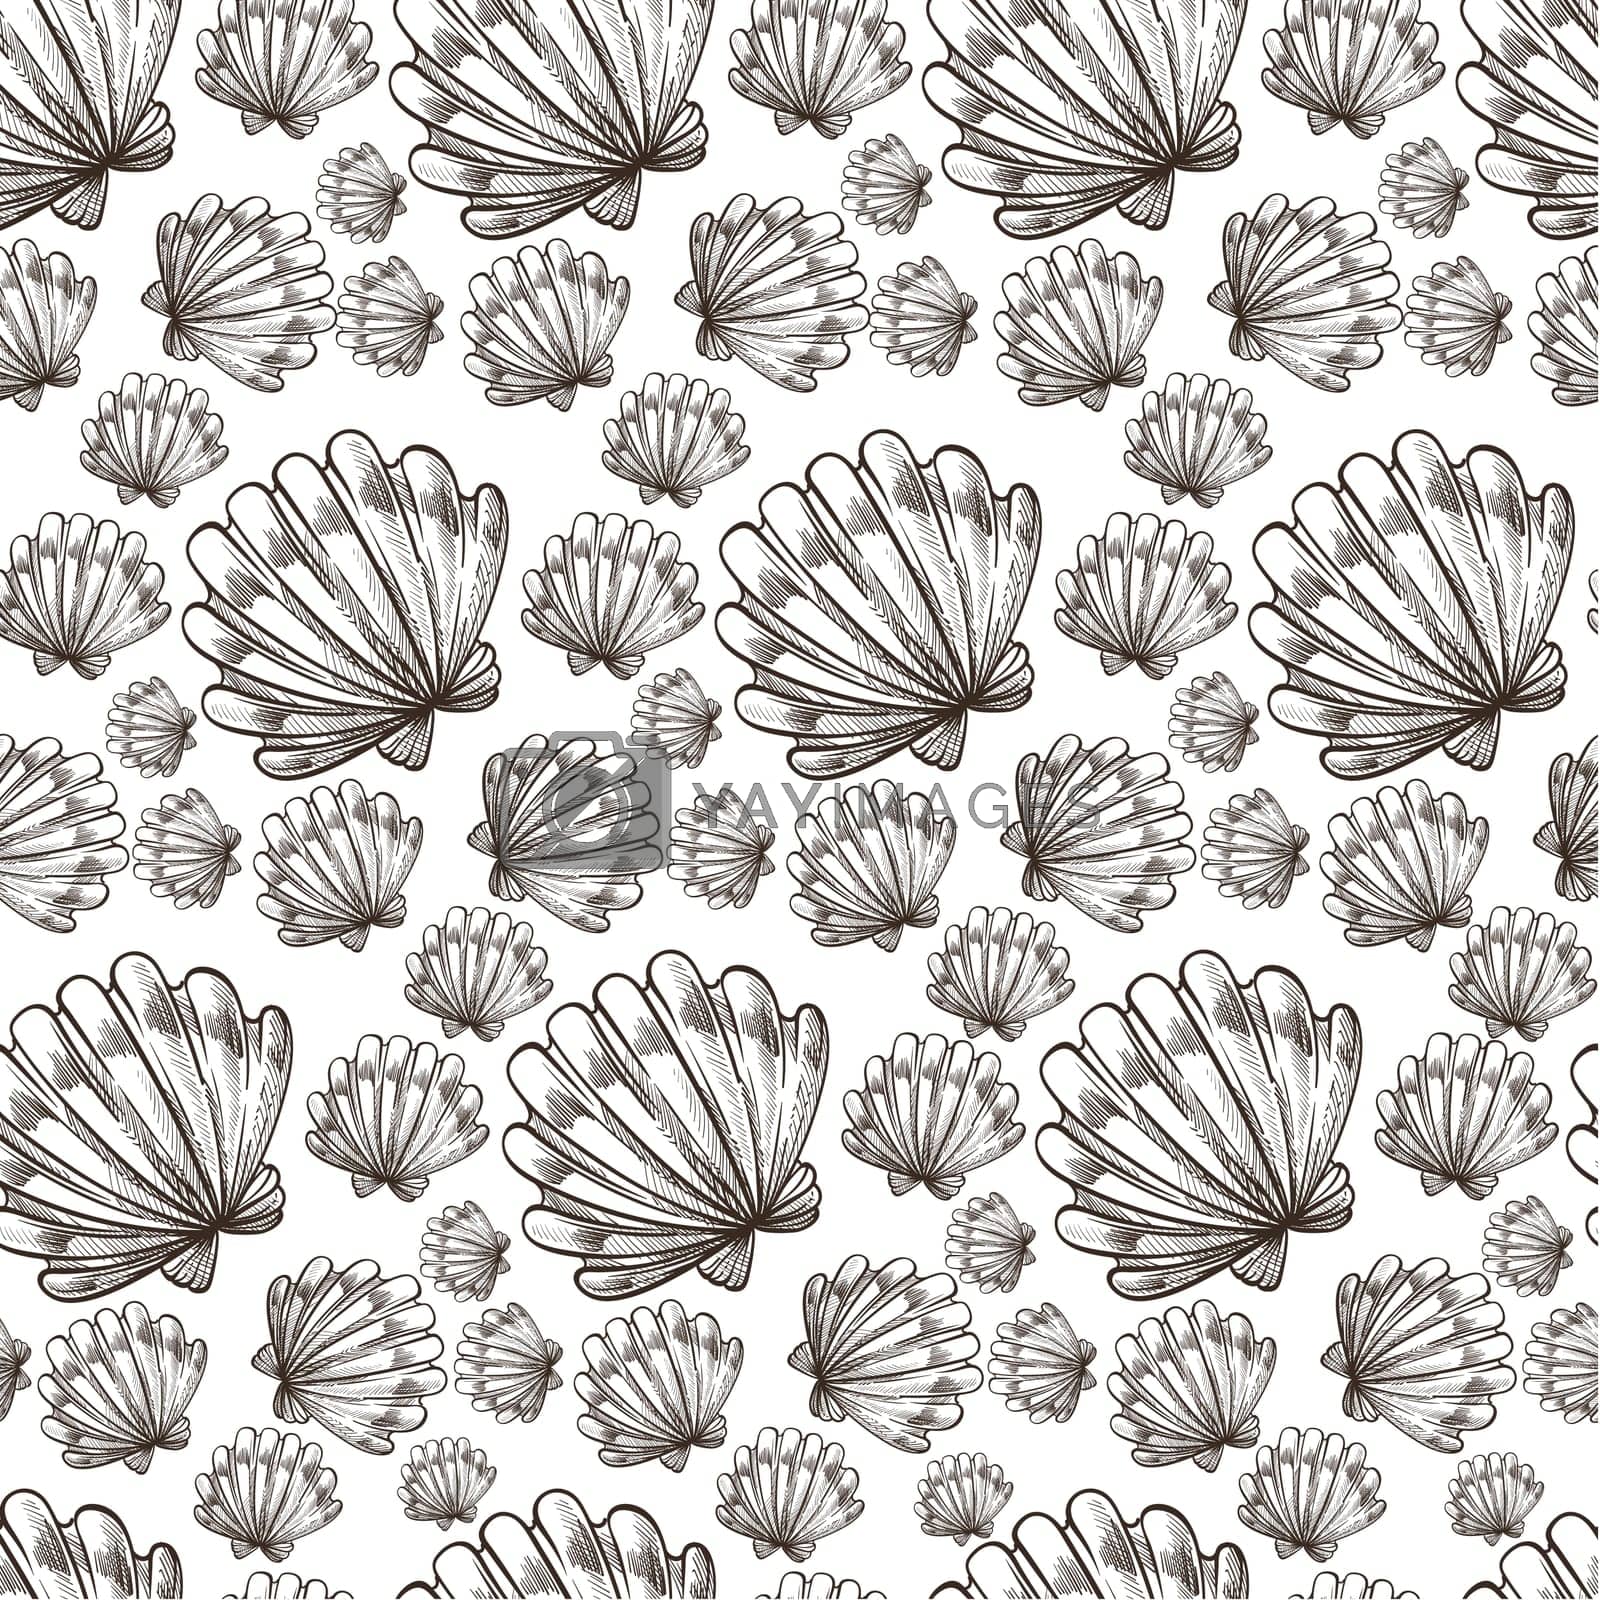 Royalty free image of Seashell ocean or sea wildlife, nautical seamless pattern by Sonulkaster